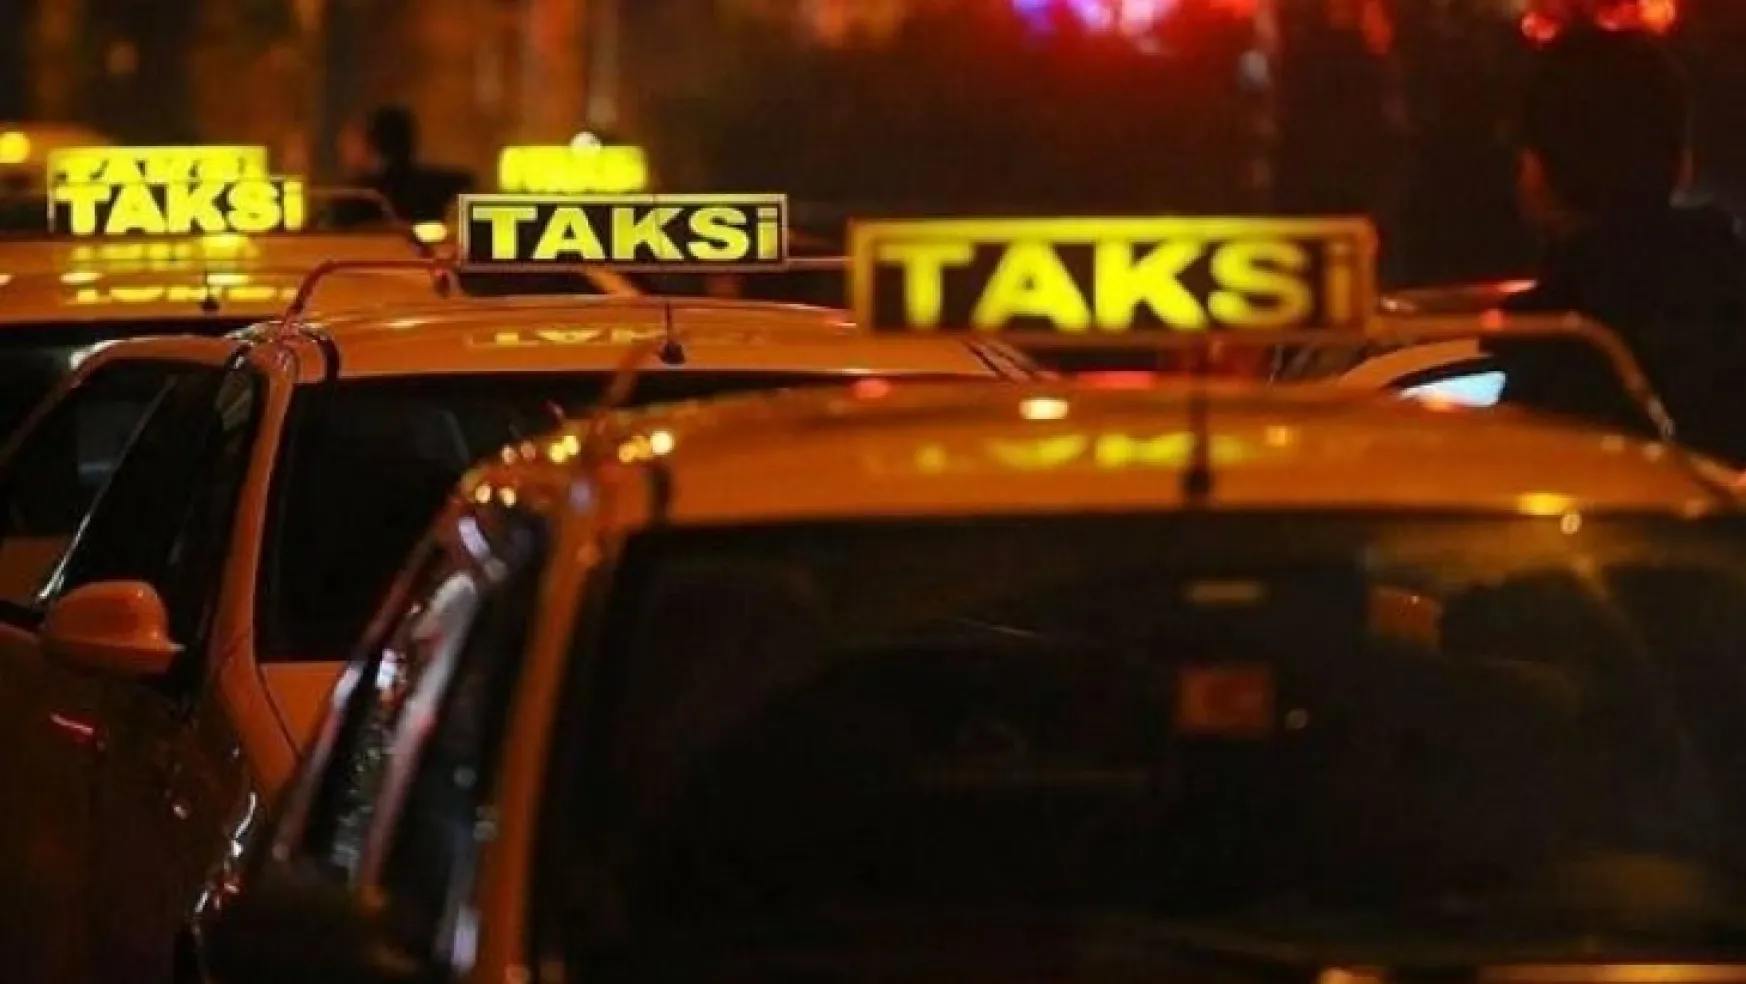 Aracını taksiye dönüştürmek isteyenlerden 2 günde 400 başvuru